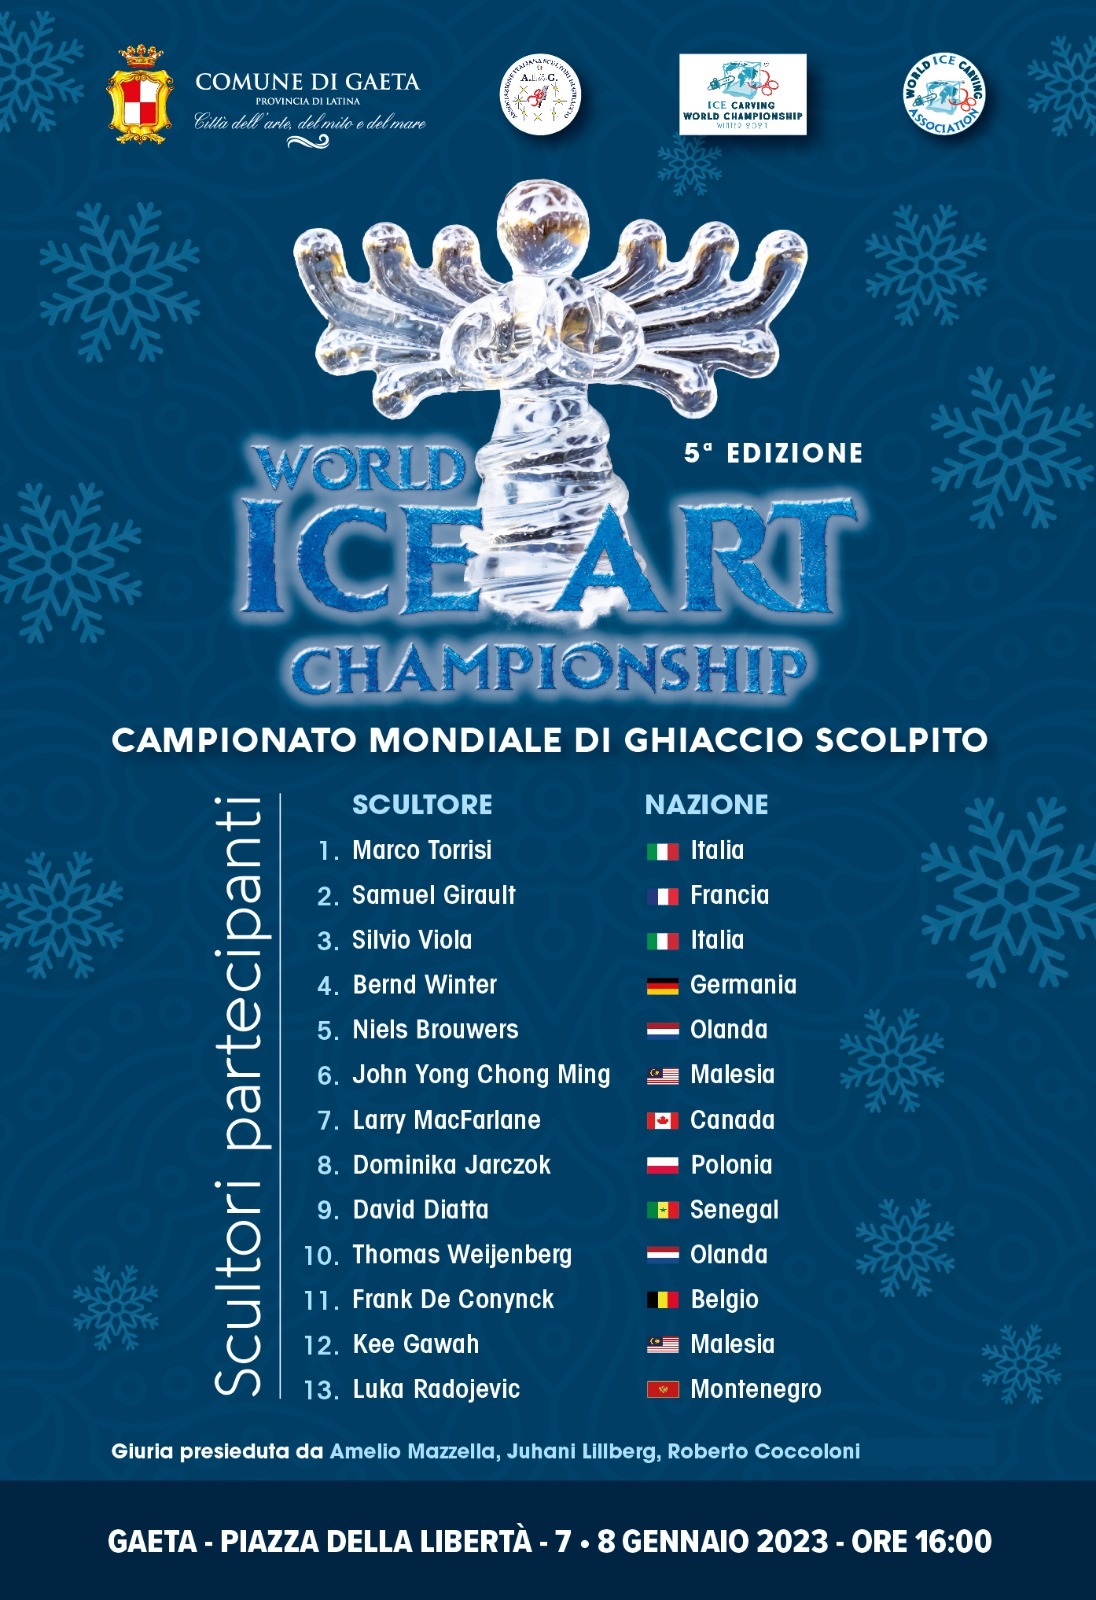 Capodanno, un grande successo in attesa della 5° edizione del Campionato Mondiale di Ghiaccio Scolpito il 7 e 8 gennaio.